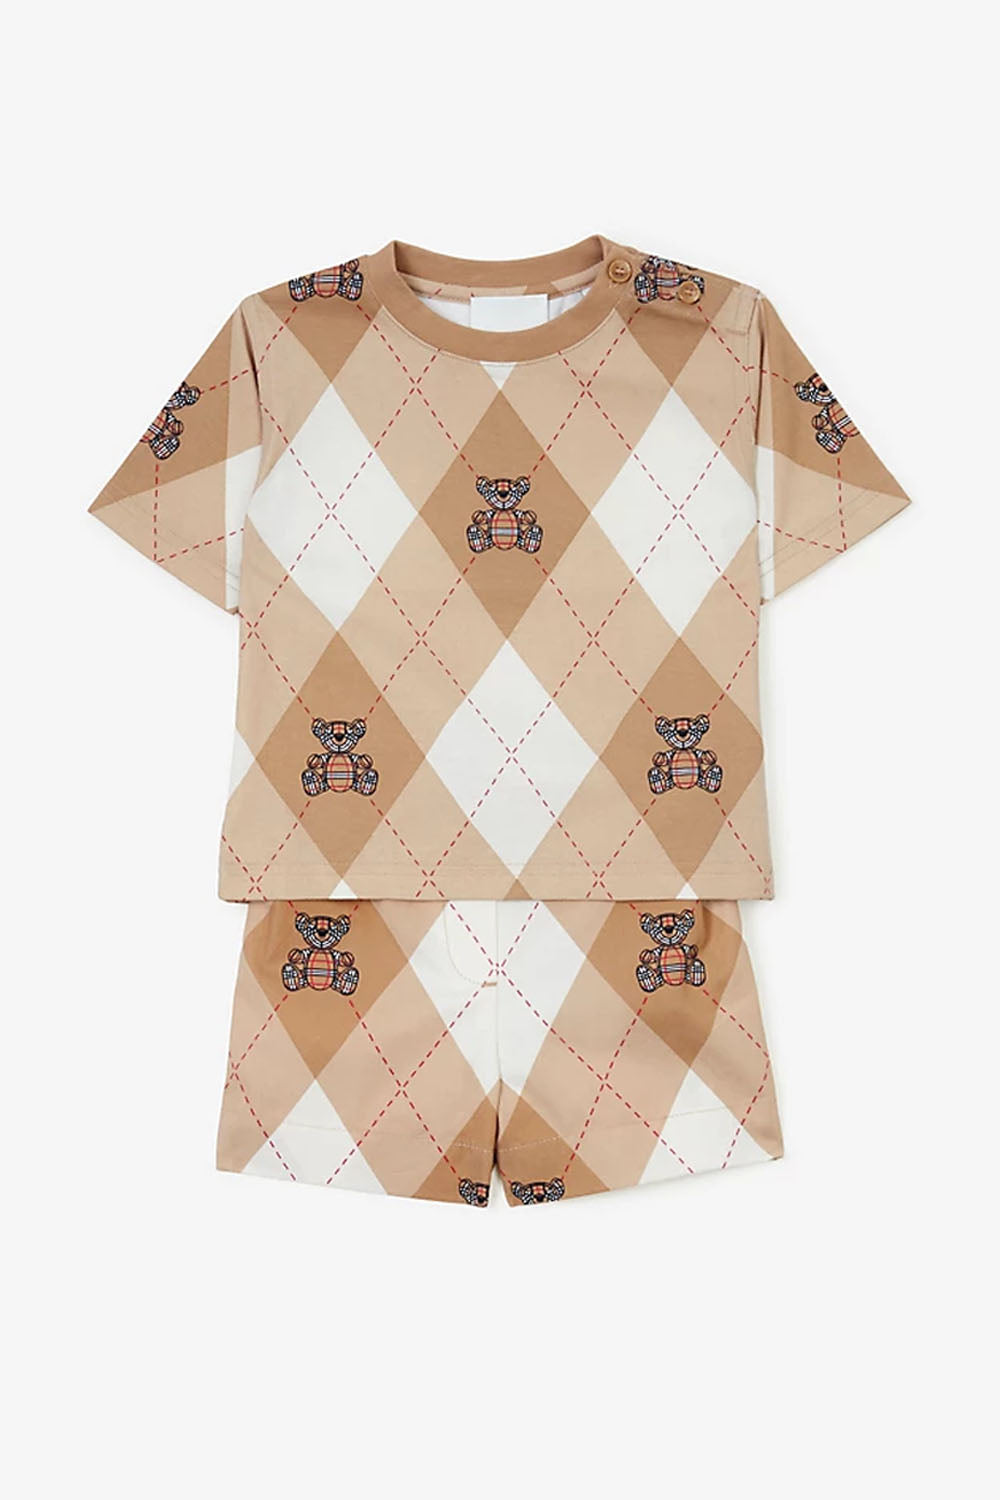 Thomas Bear Argyle Print Cotton T-shirt Baby for Boys - Maison7